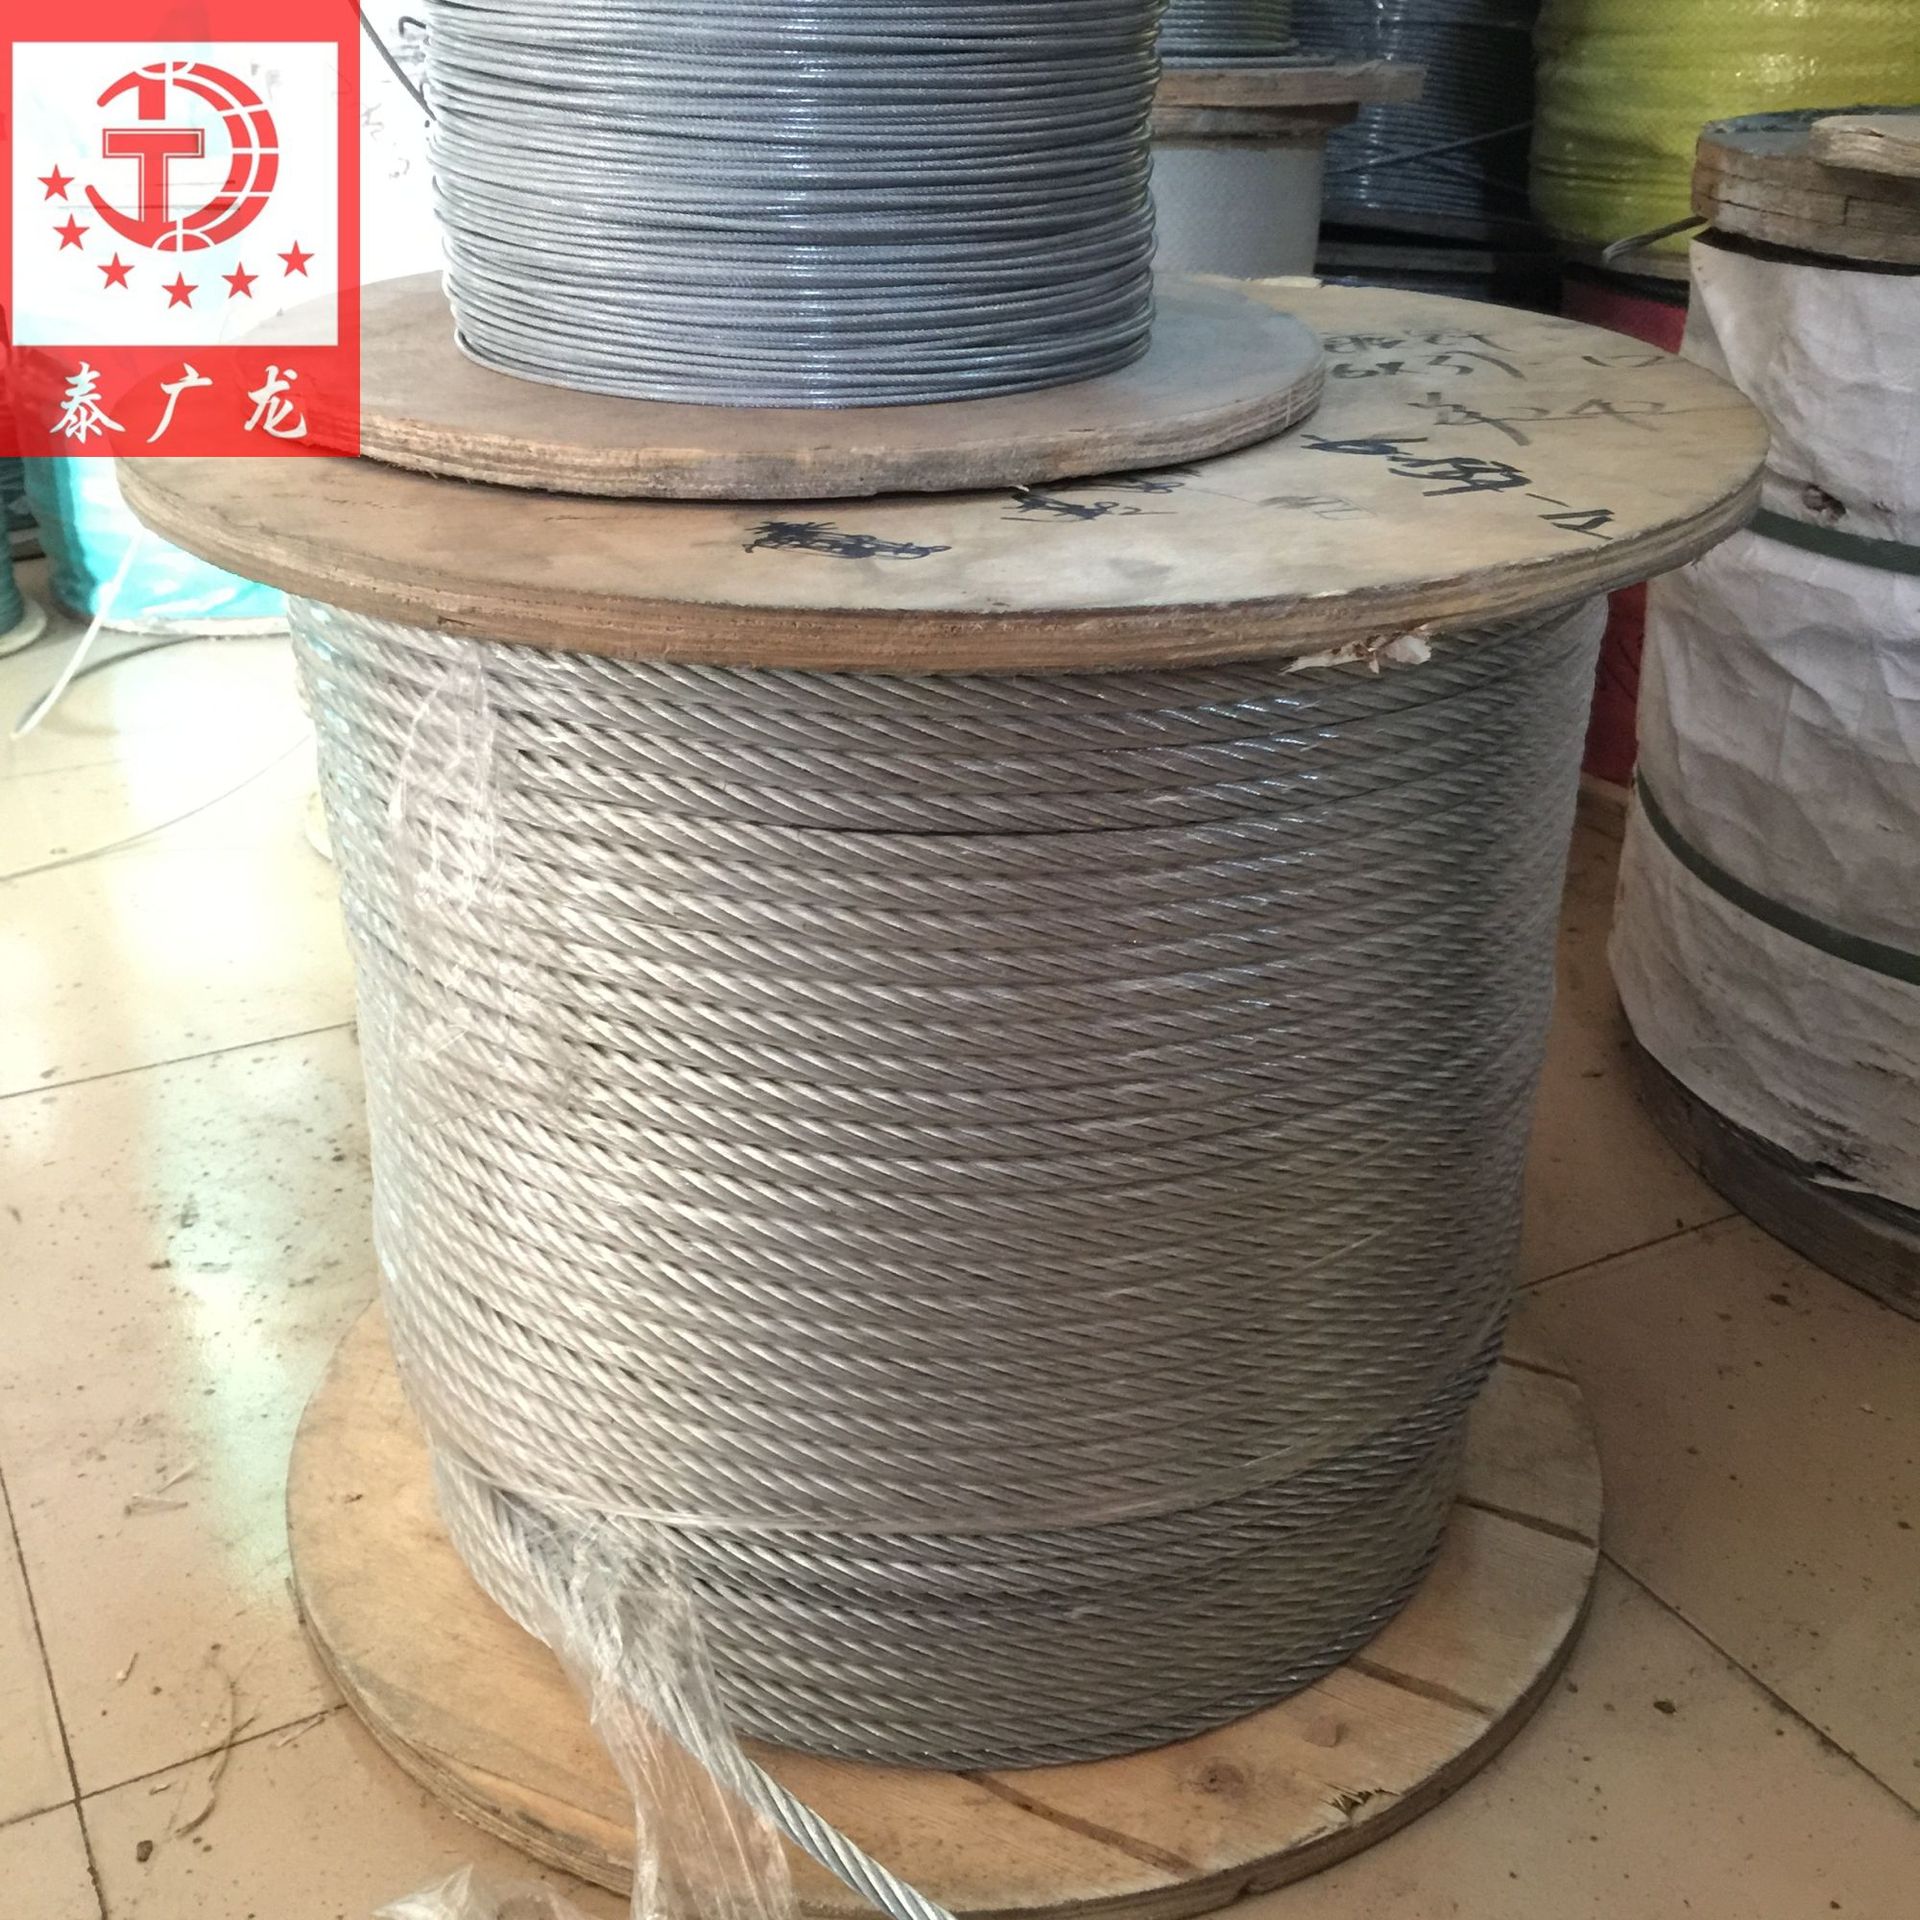 泰广龙供应棉芯钢丝绳 普通材质钢丝绳 37股钢丝绳12mm